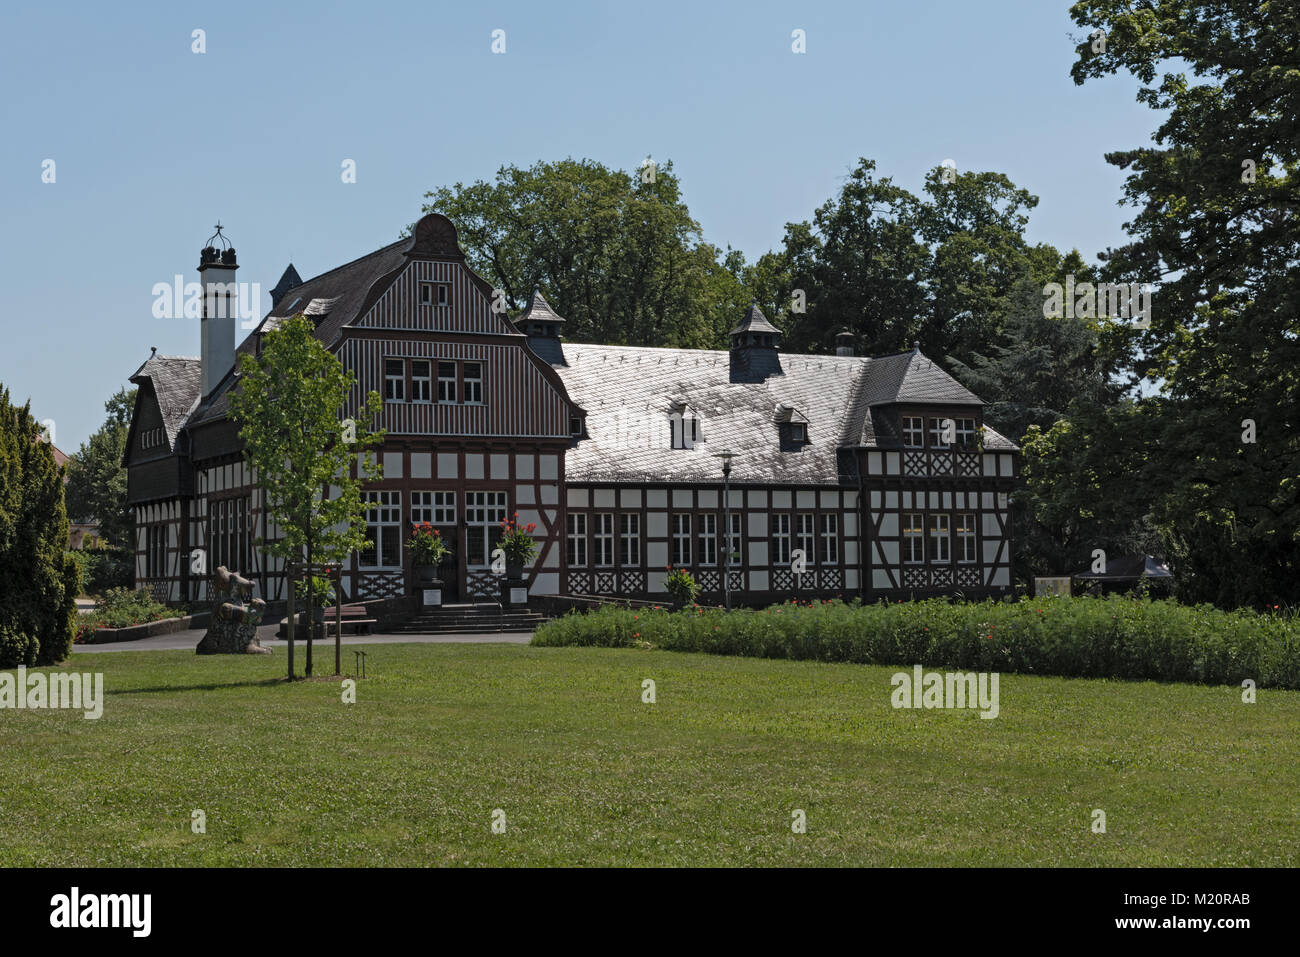 La casa della biblioteca pubblica nello storico parco termale di Bad Nauheim, Hesse, Germania Foto Stock